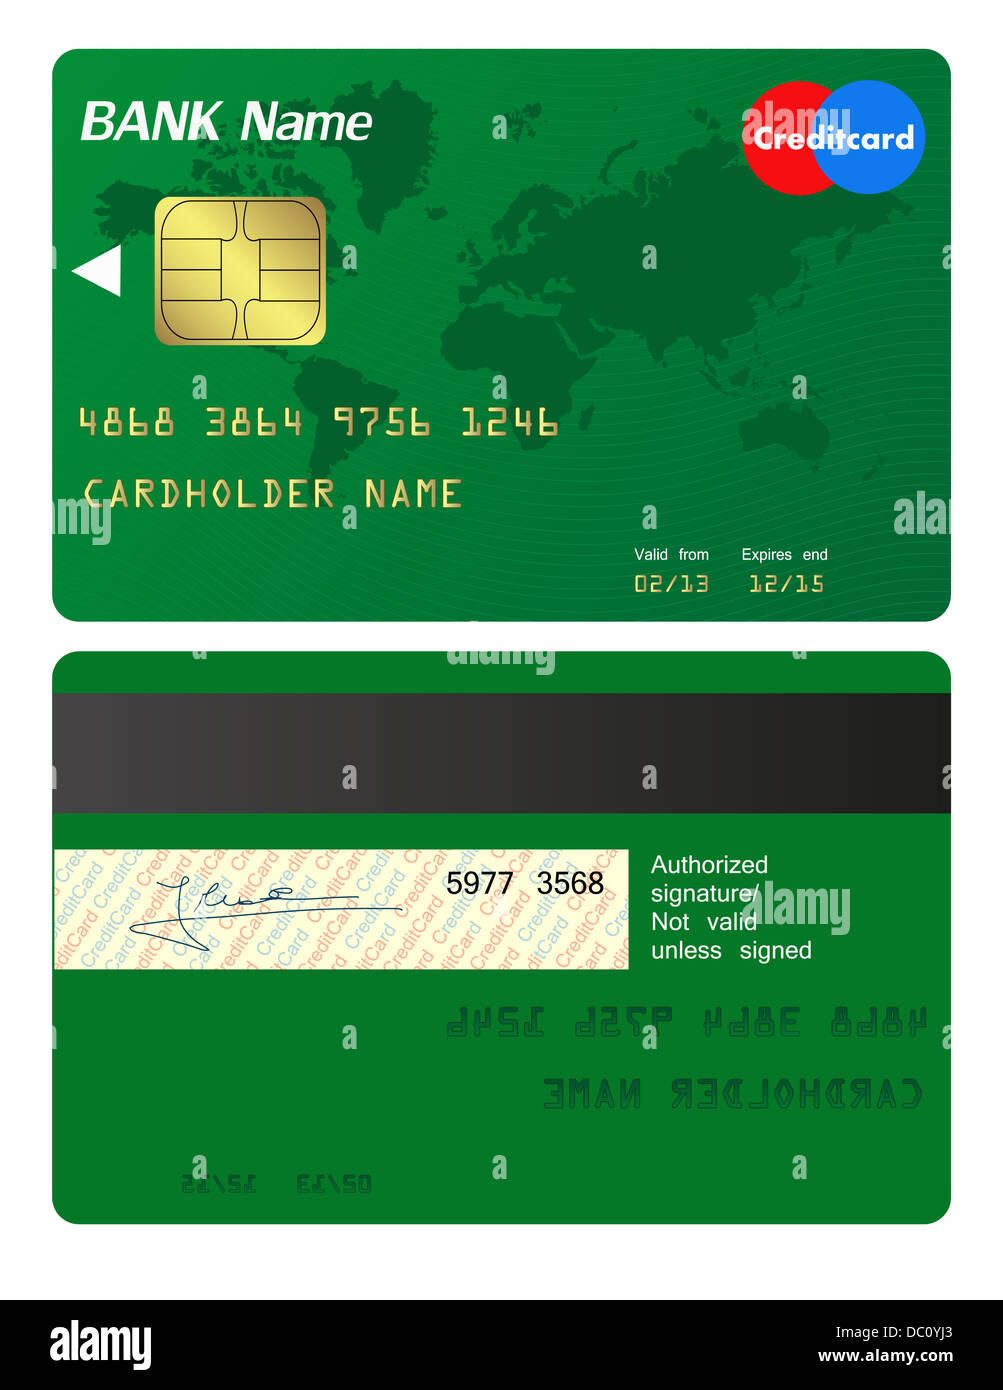 Банковская карта для доната